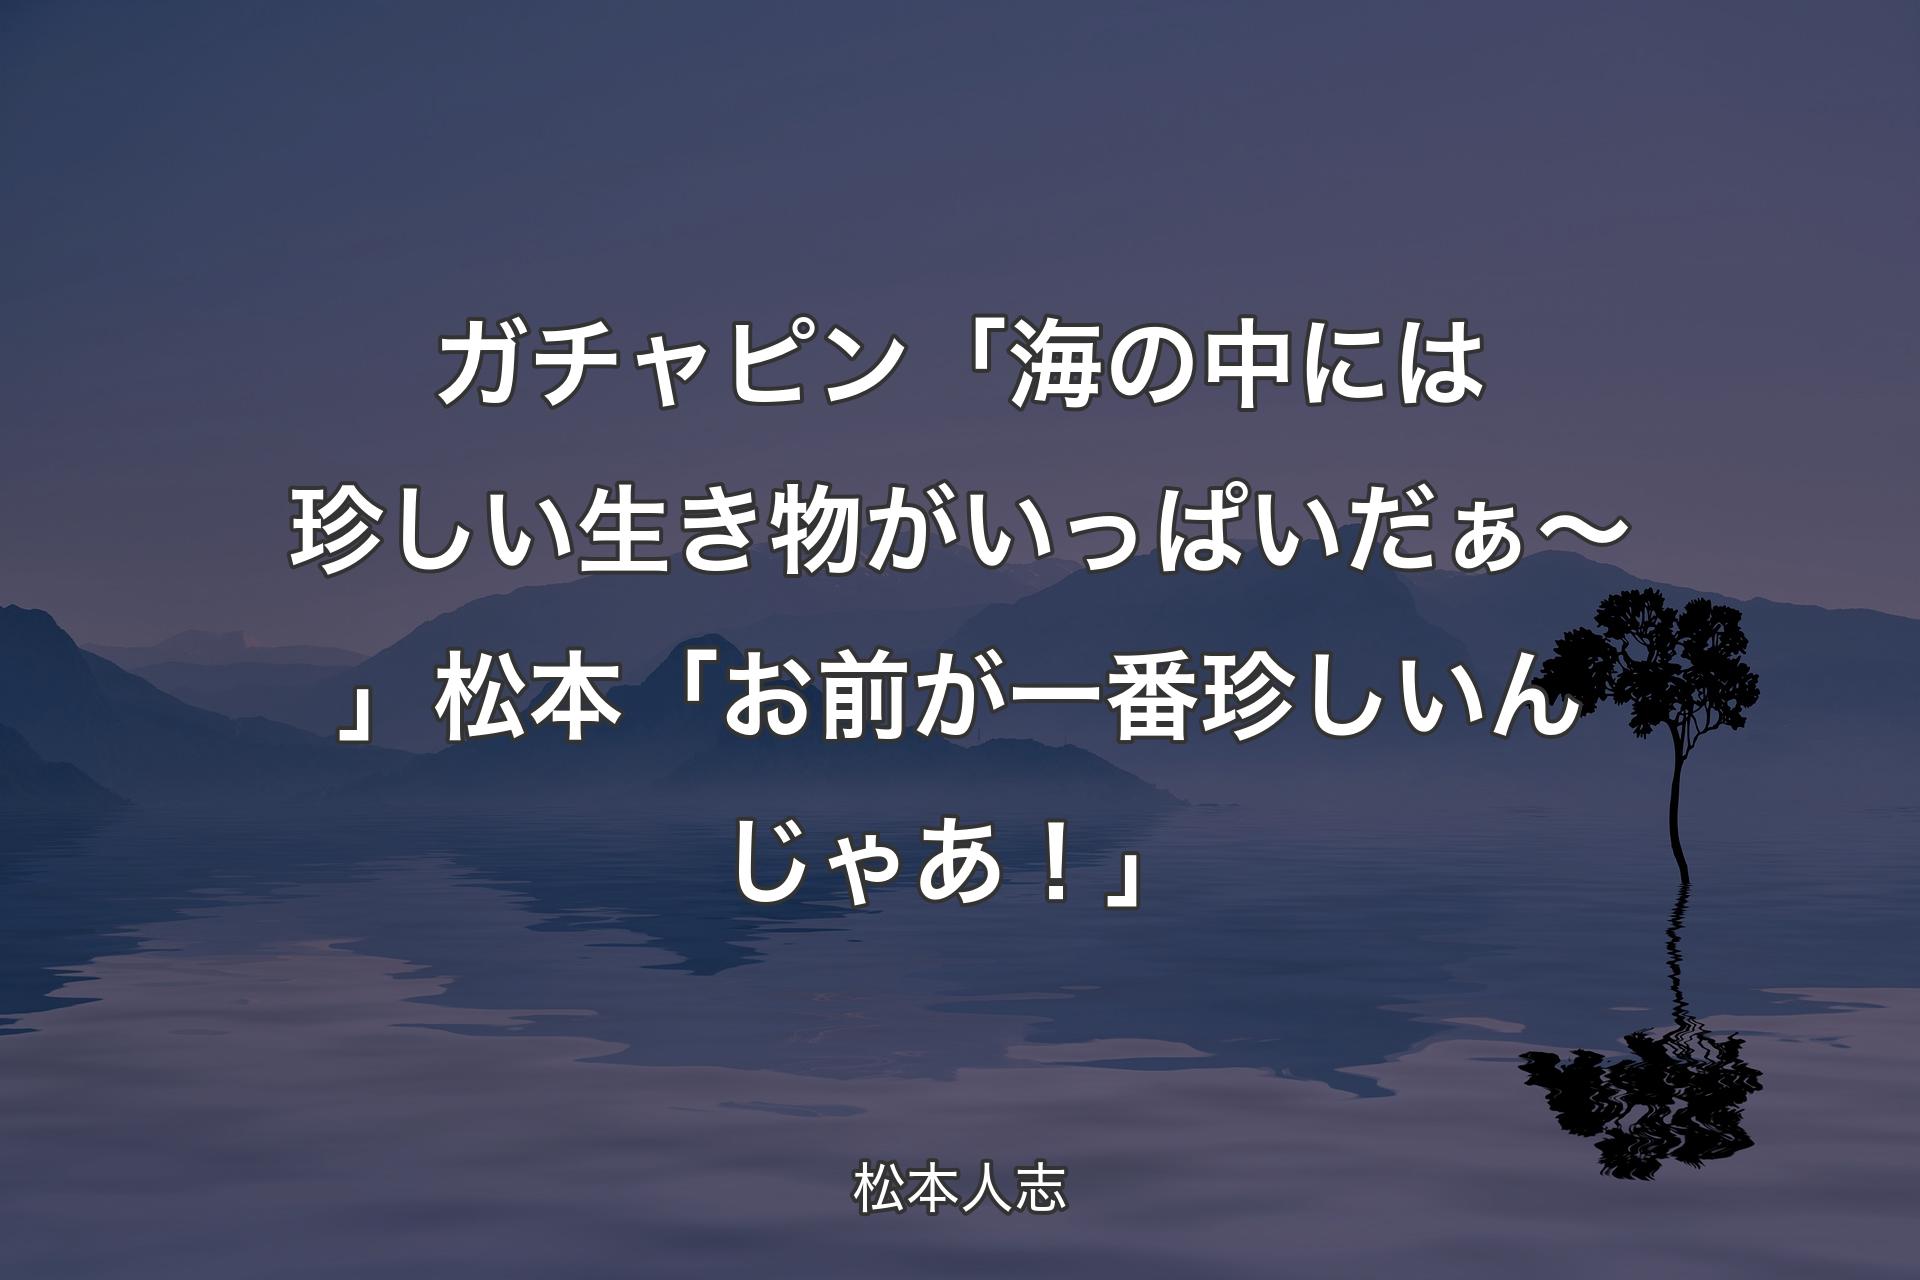 【背景4】ガチャピン「海の中には珍しい生き物がいっぱいだぁ～」松本「お前が一番珍しいんじゃあ！」 - 松本人志